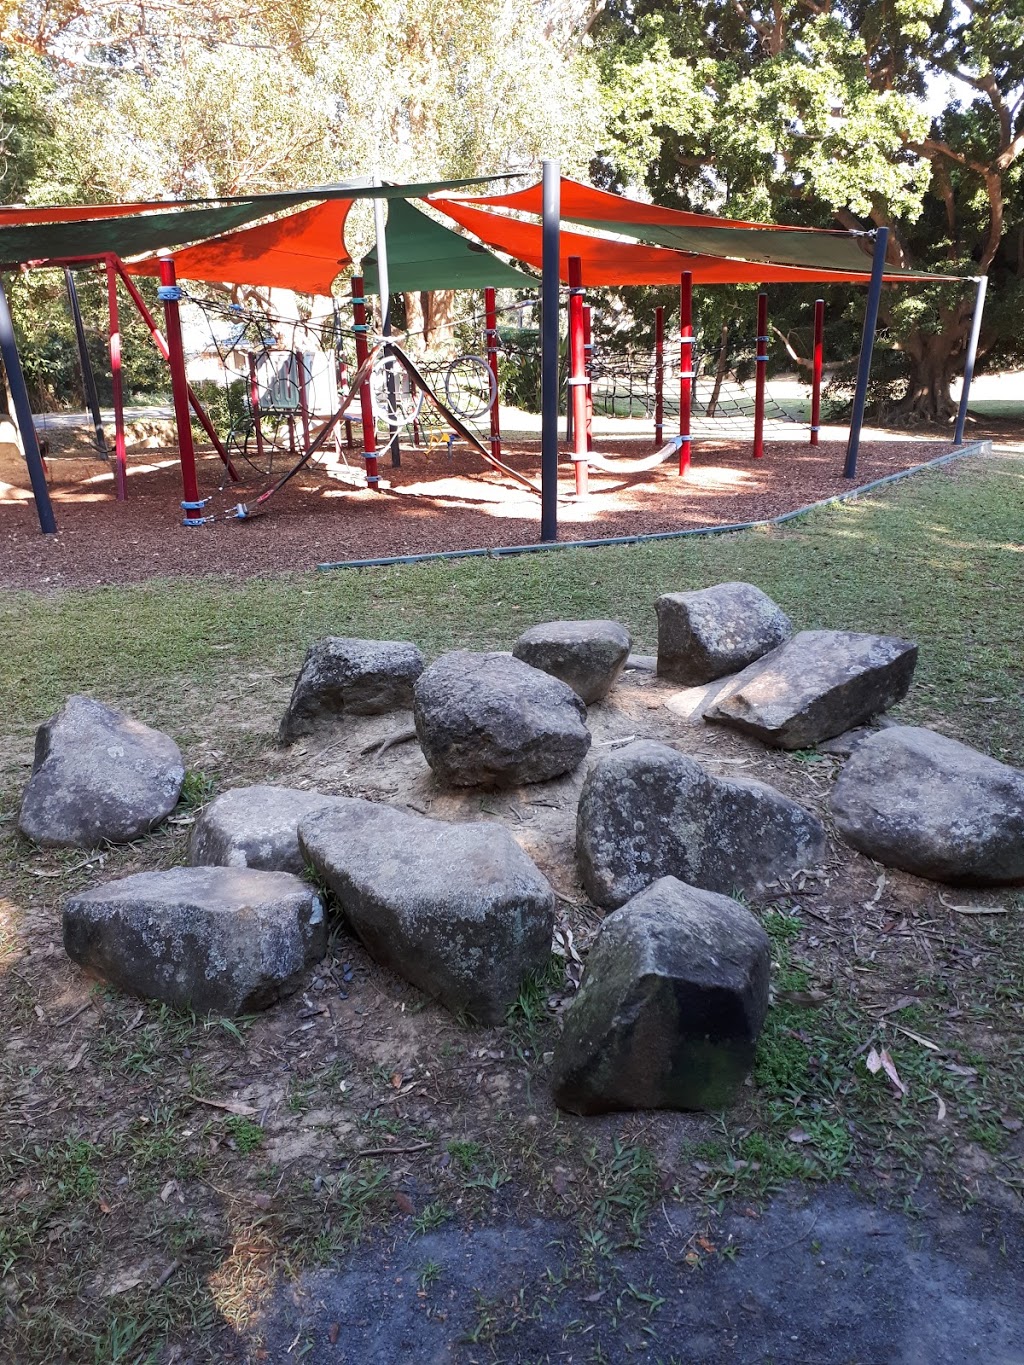 Heritage Park | park | 5 Mill St, Mullumbimby NSW 2482, Australia